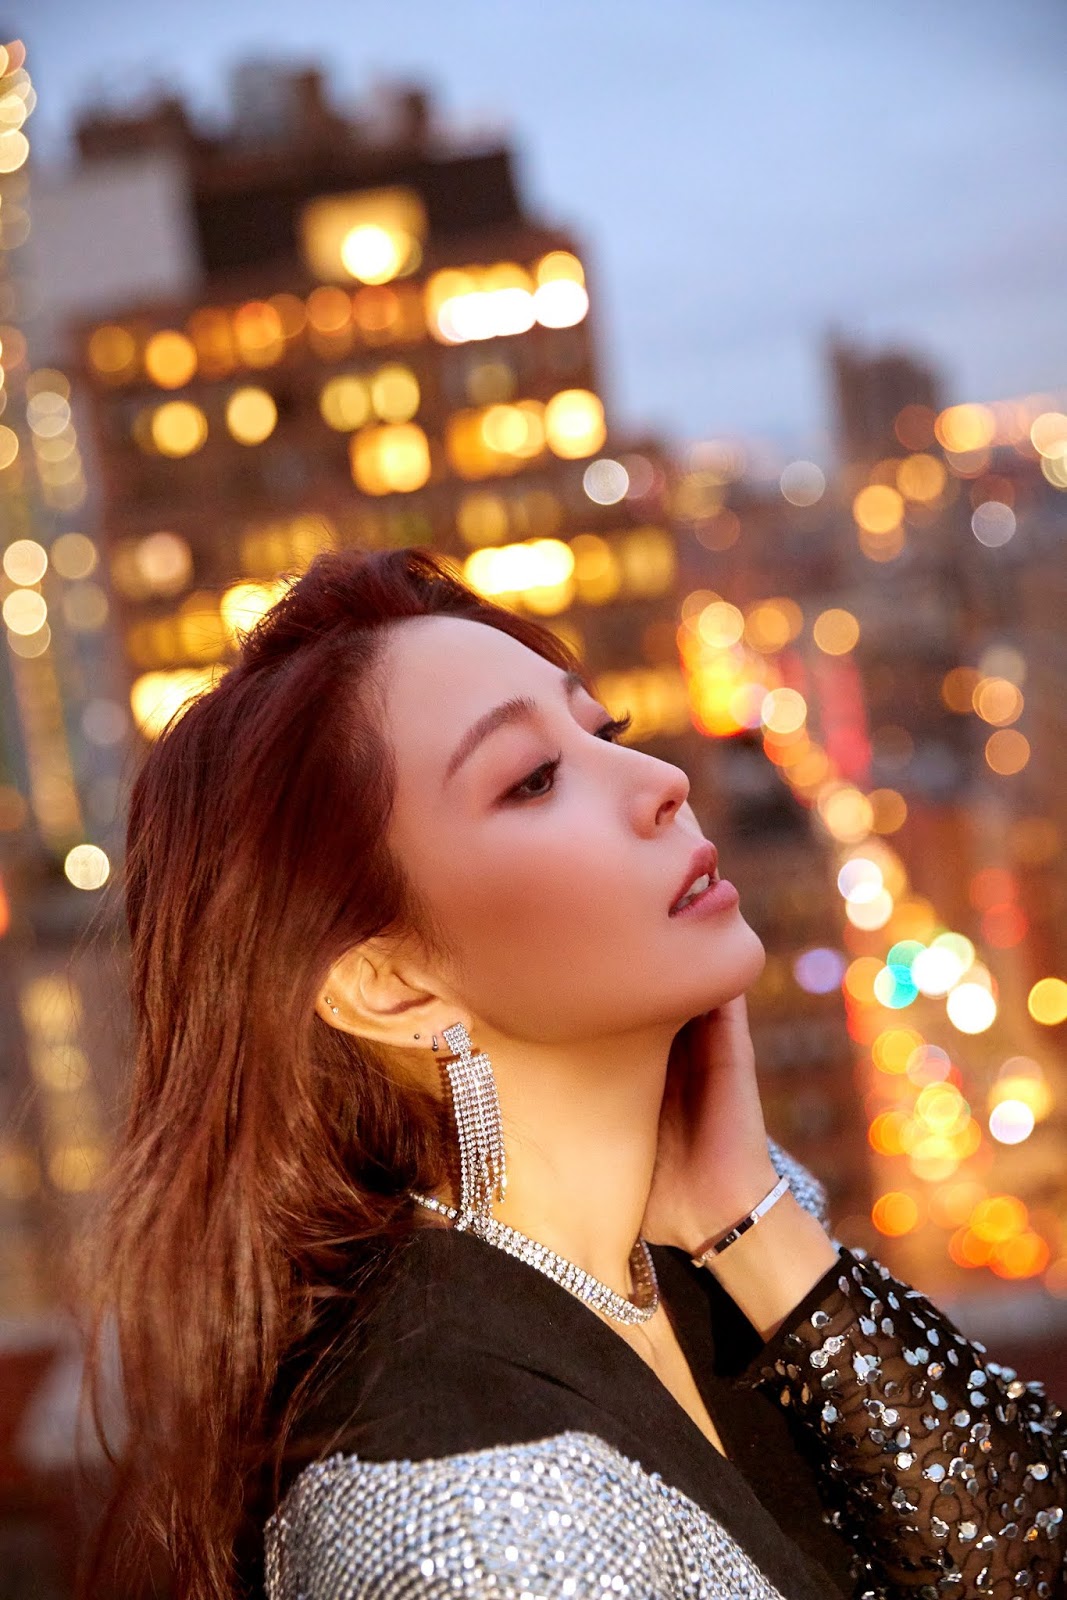 South Korean singer BoA: Six songs that inspired me